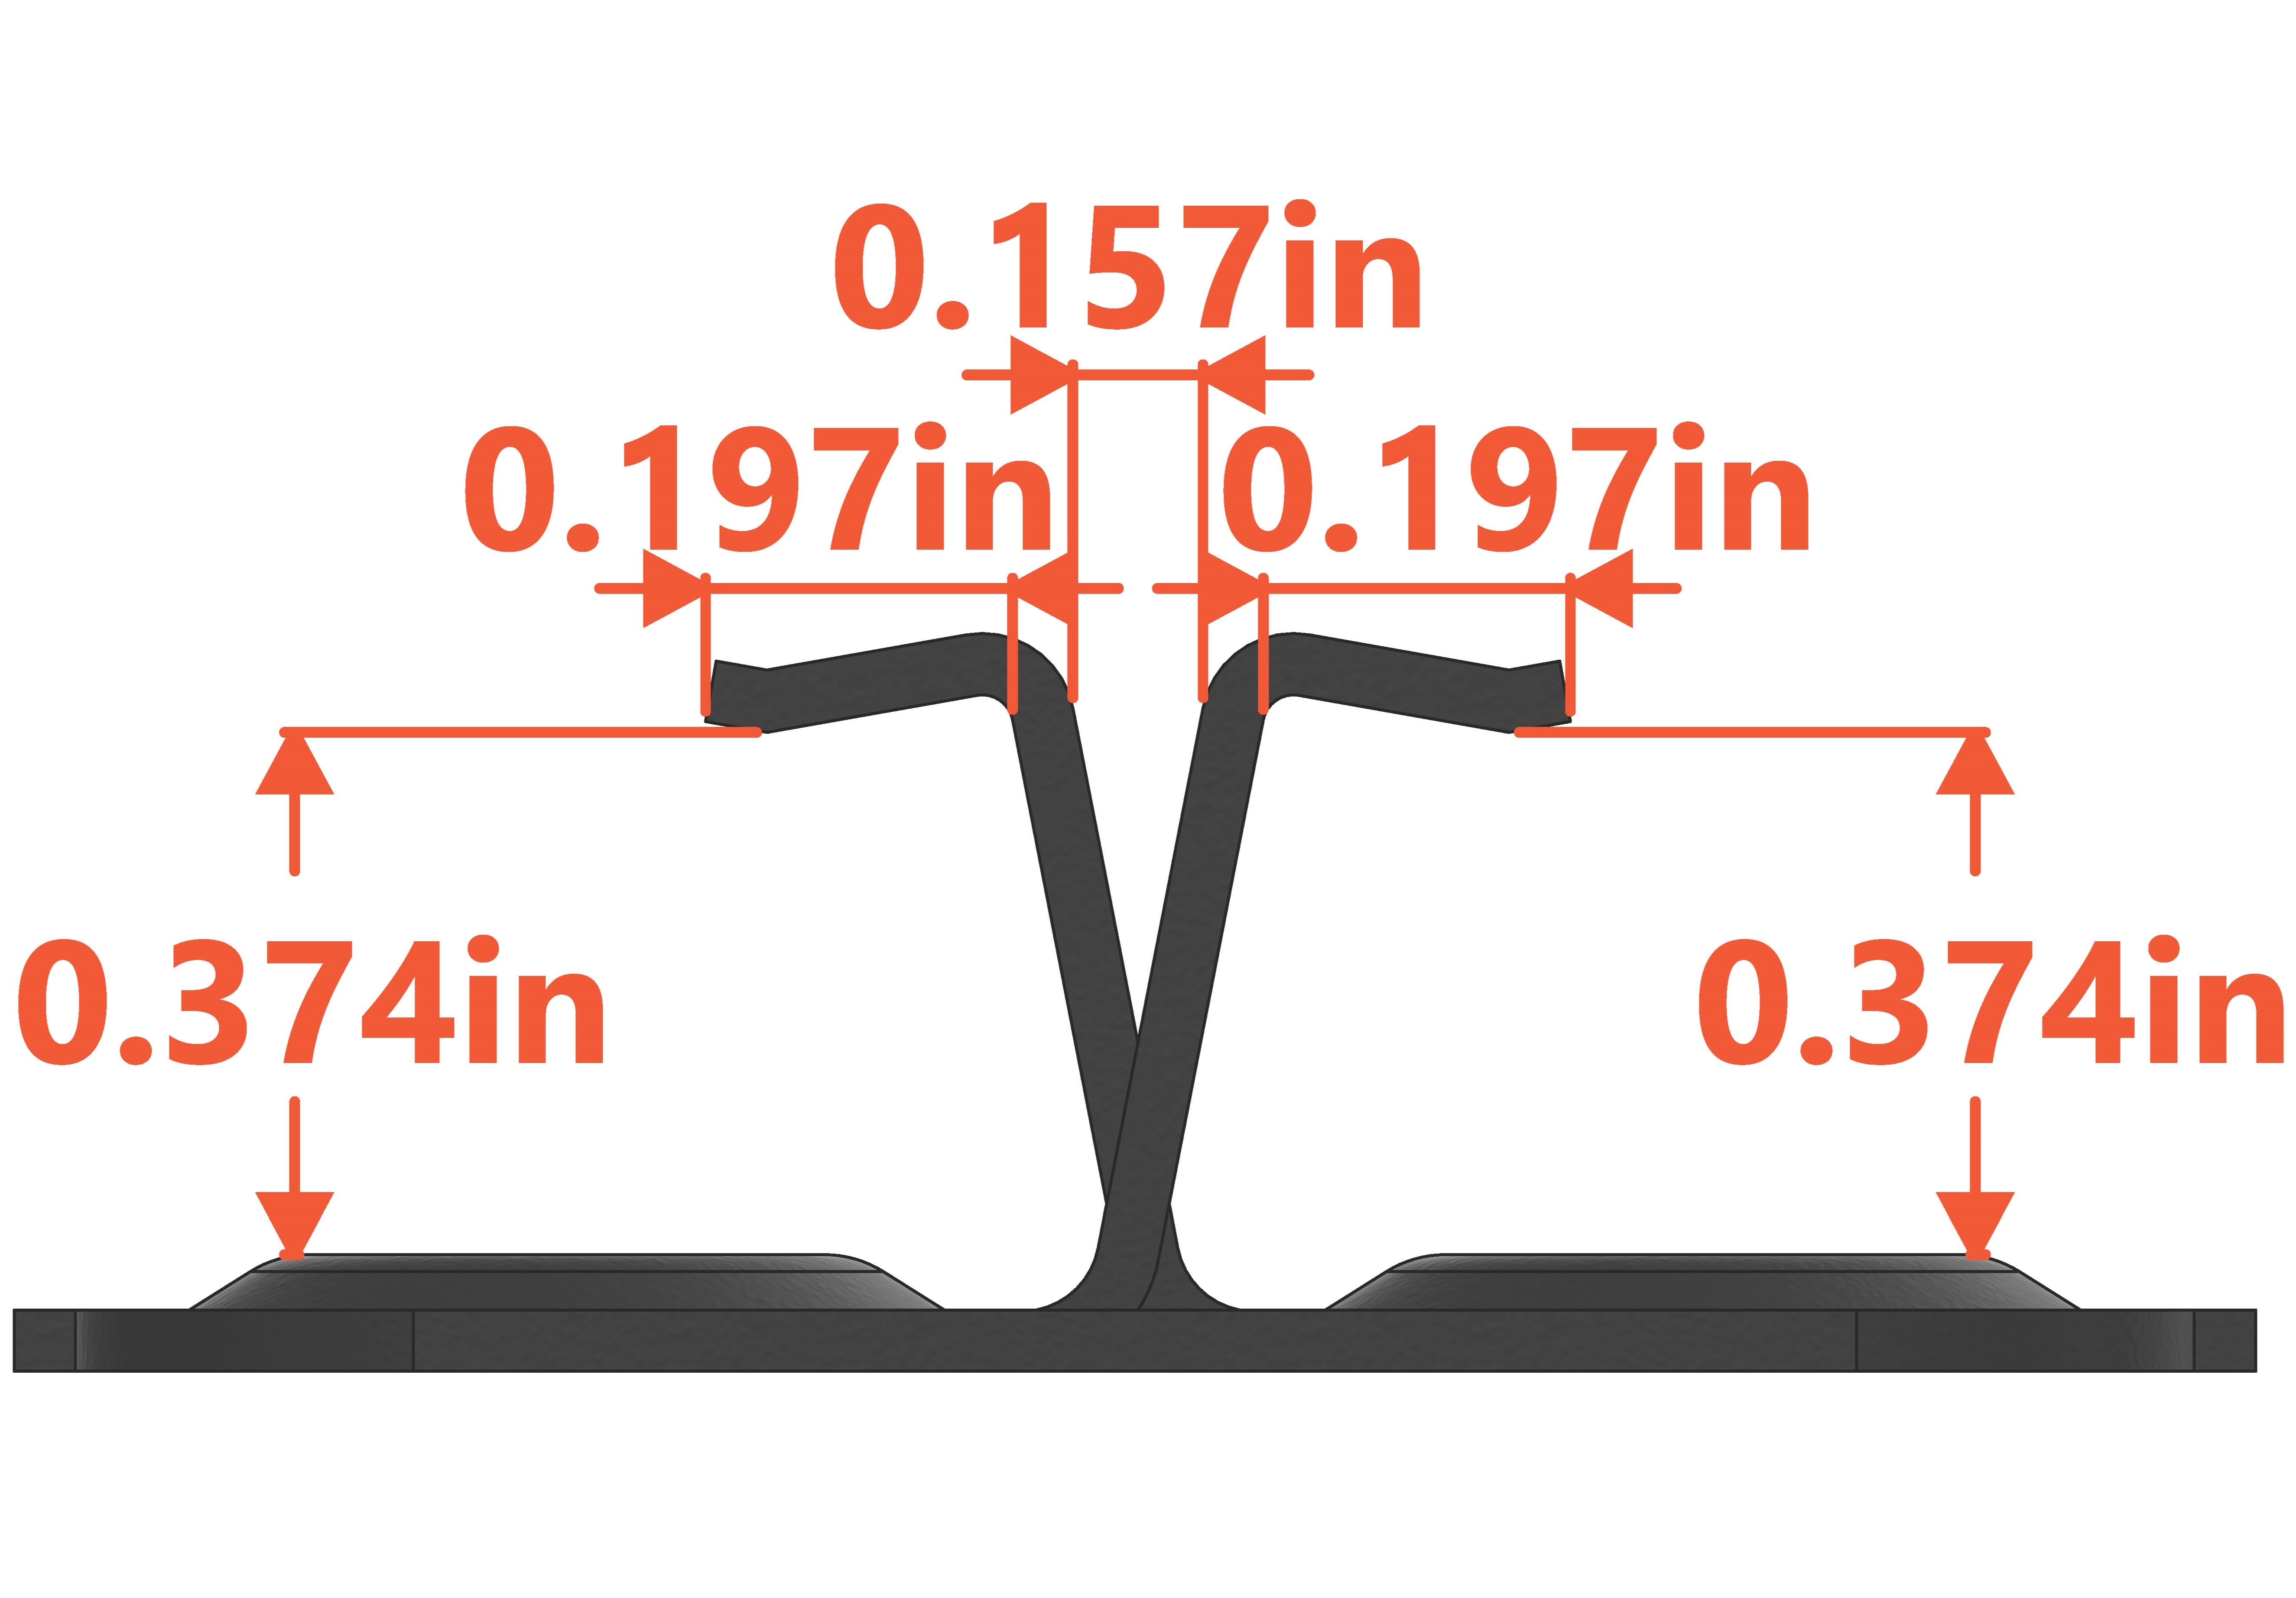 WPC Hidden Deck Clip: Stainless - 9.5mm